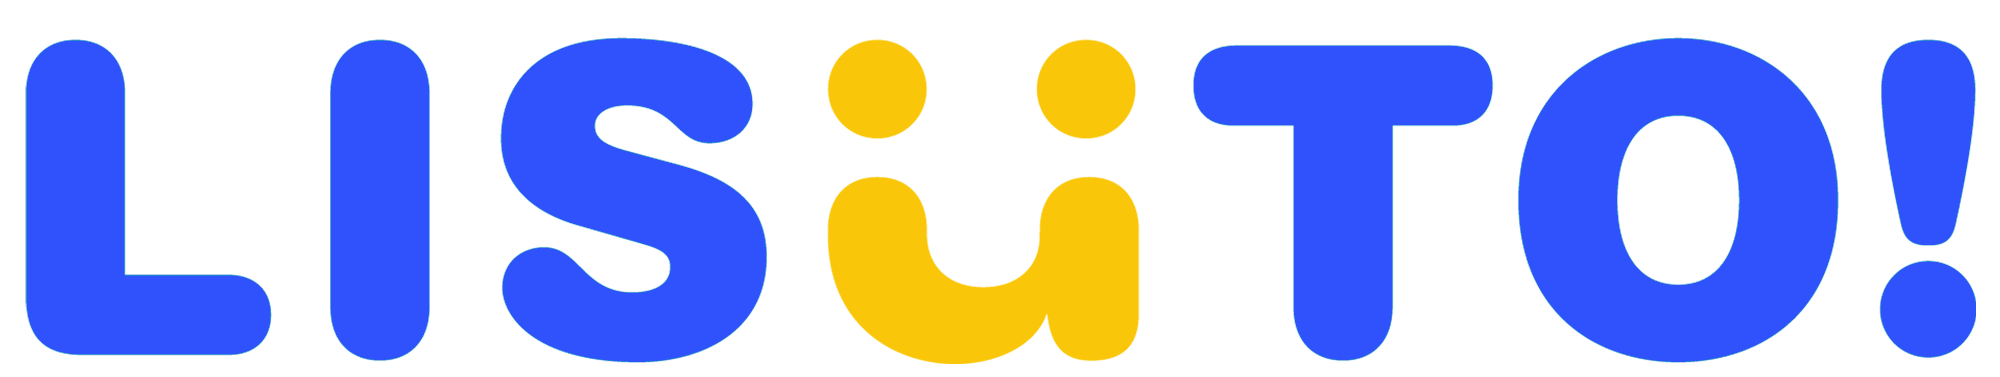 Lisuto logo